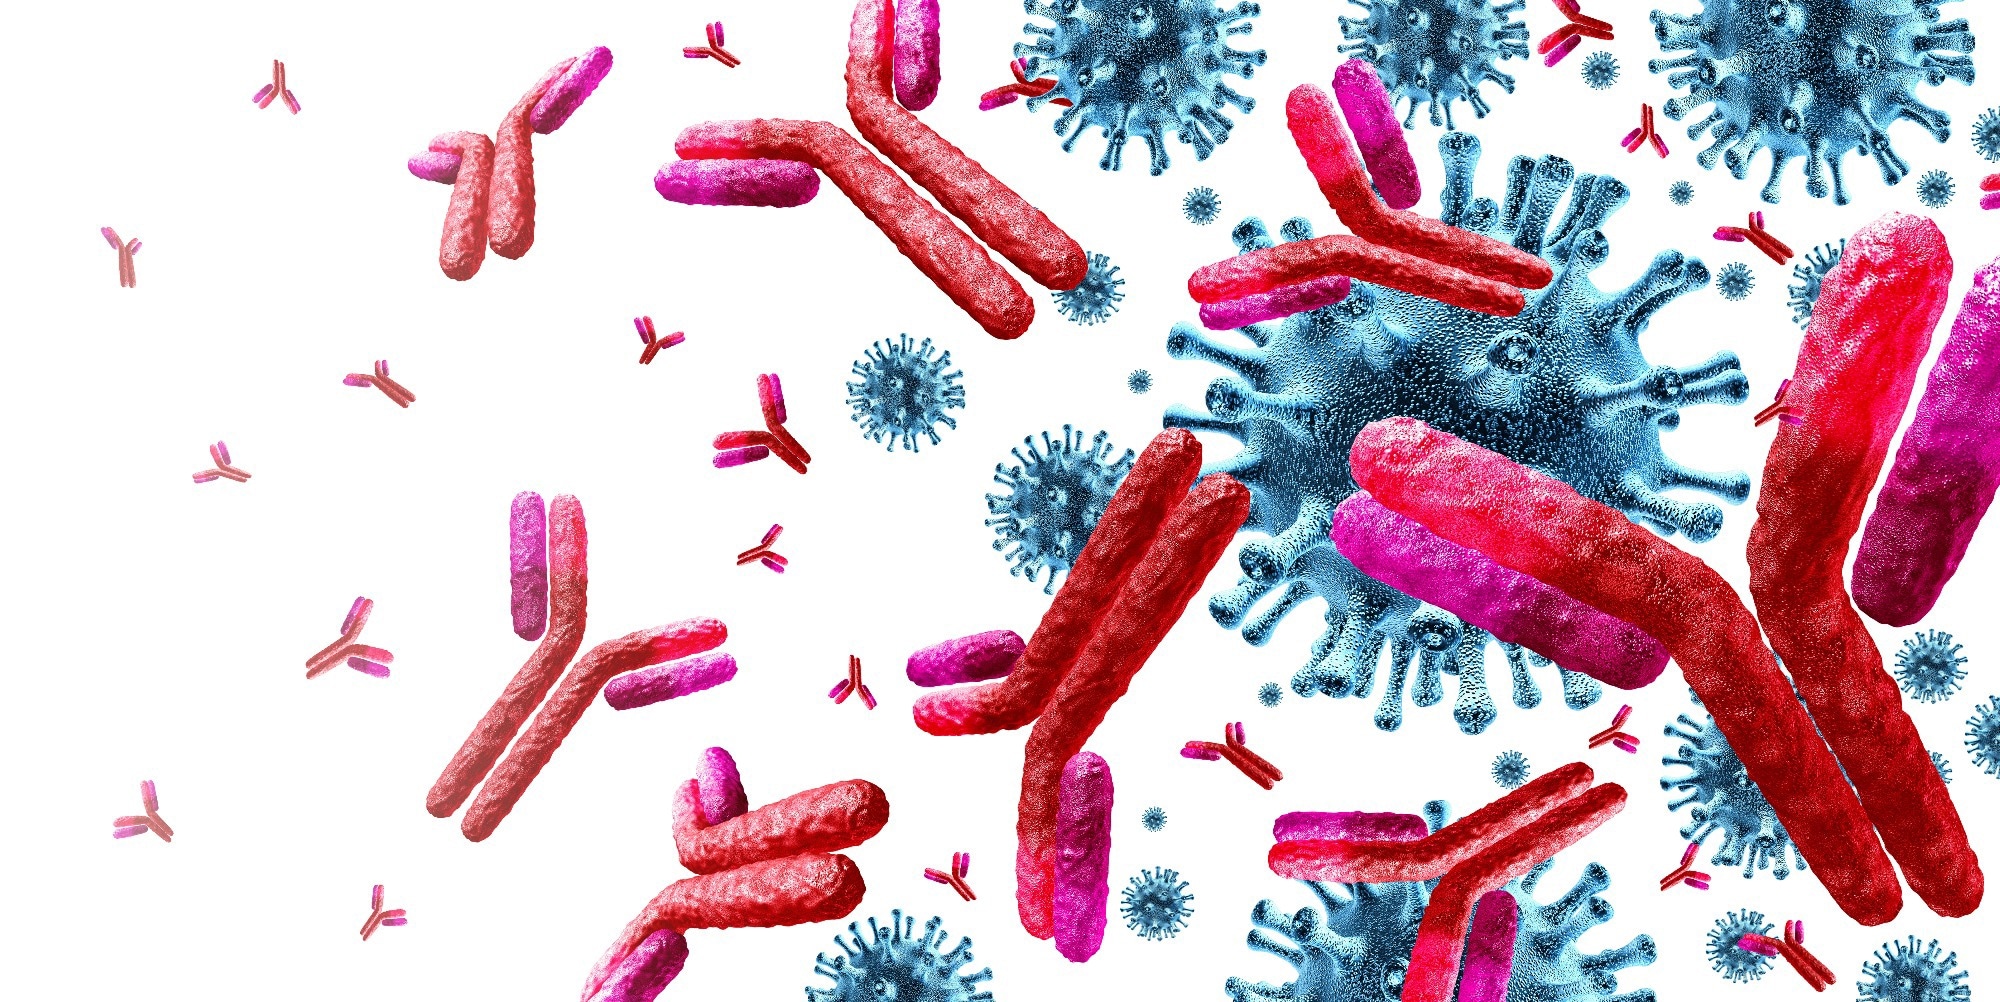 Primer: Immunological imprinting: Understanding COVID-19. Image Credit: Lightspring / Shutterstock